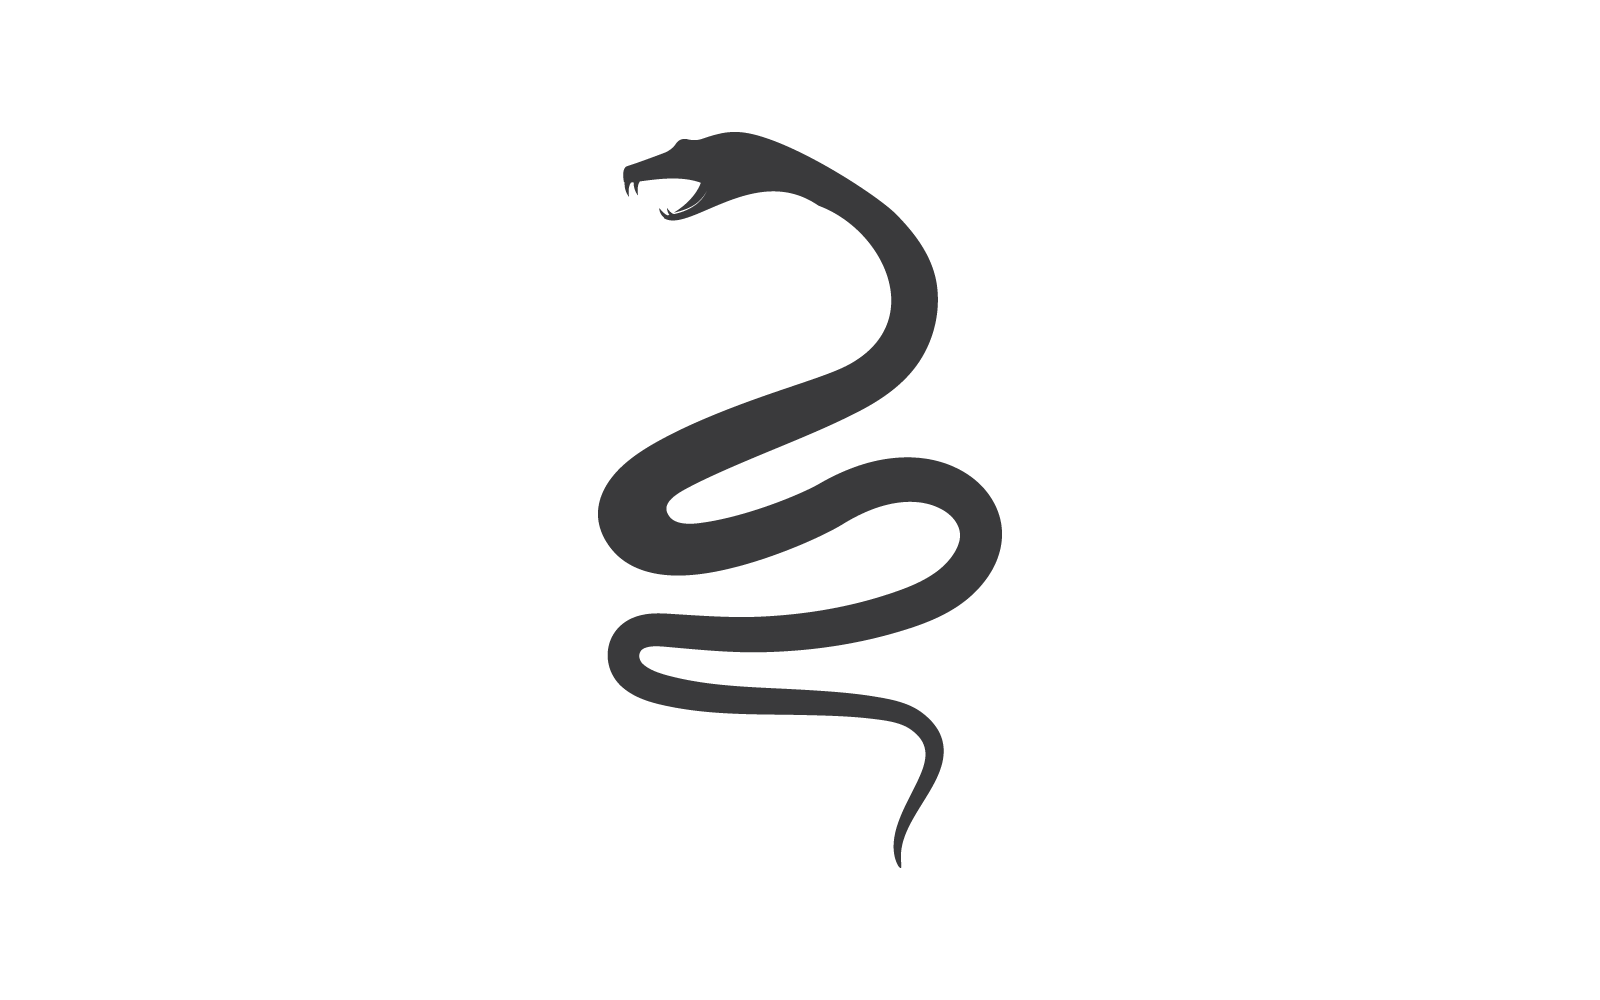 Disegno di illustrazione vettoriale dell'icona del logo del serpente